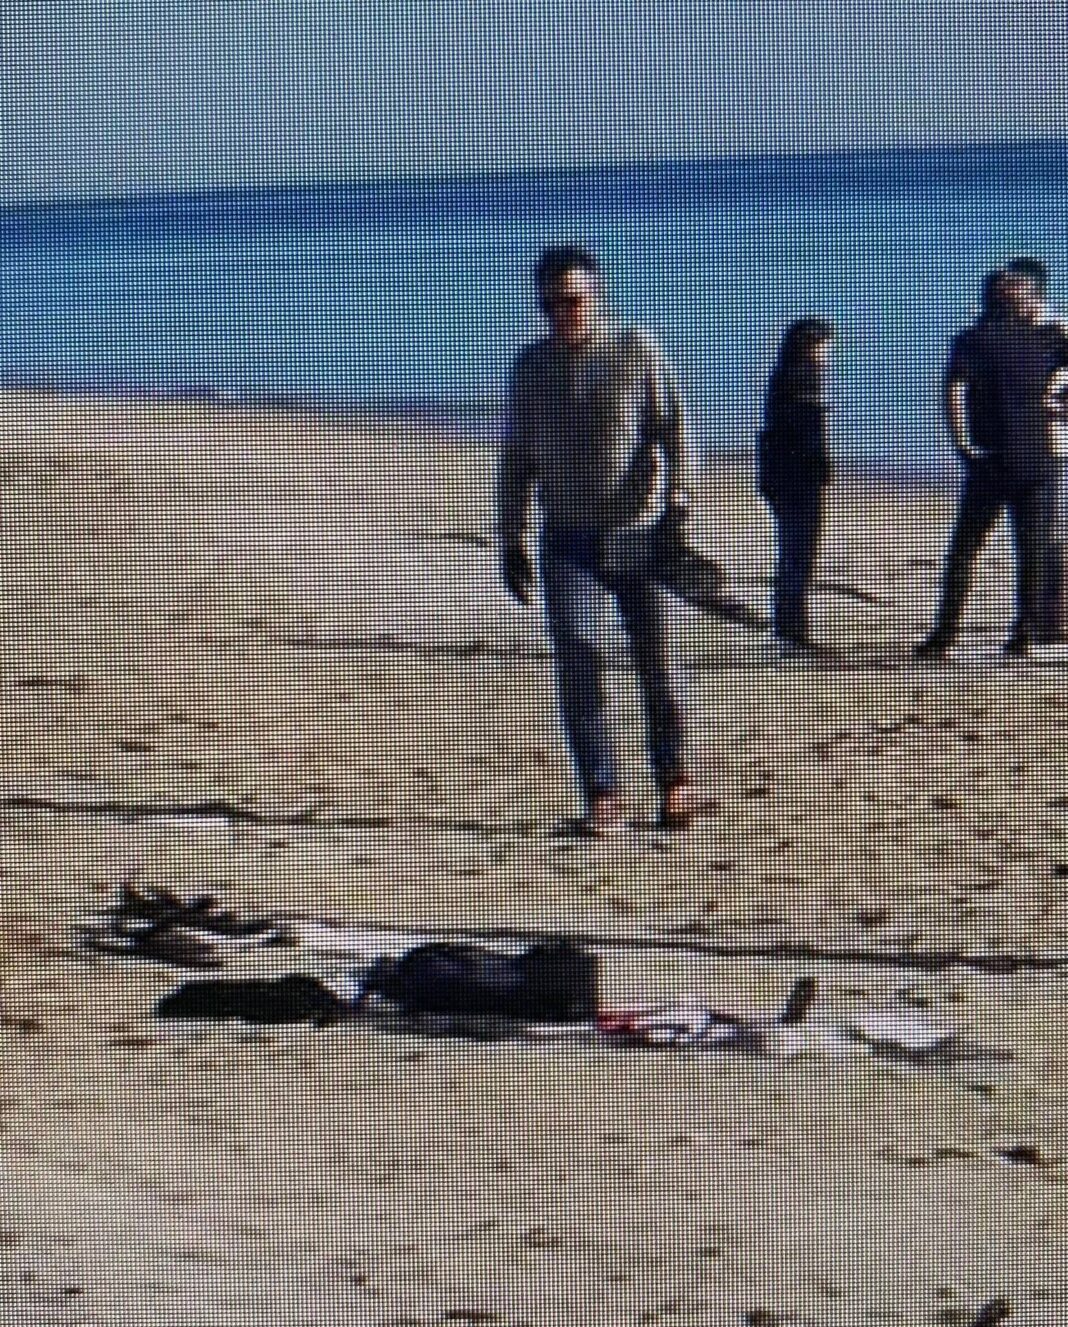 Porto Sant'Elpidio, giallo in spiaggia: trovato il cadavere di un 40nne. Era in costume da bagno